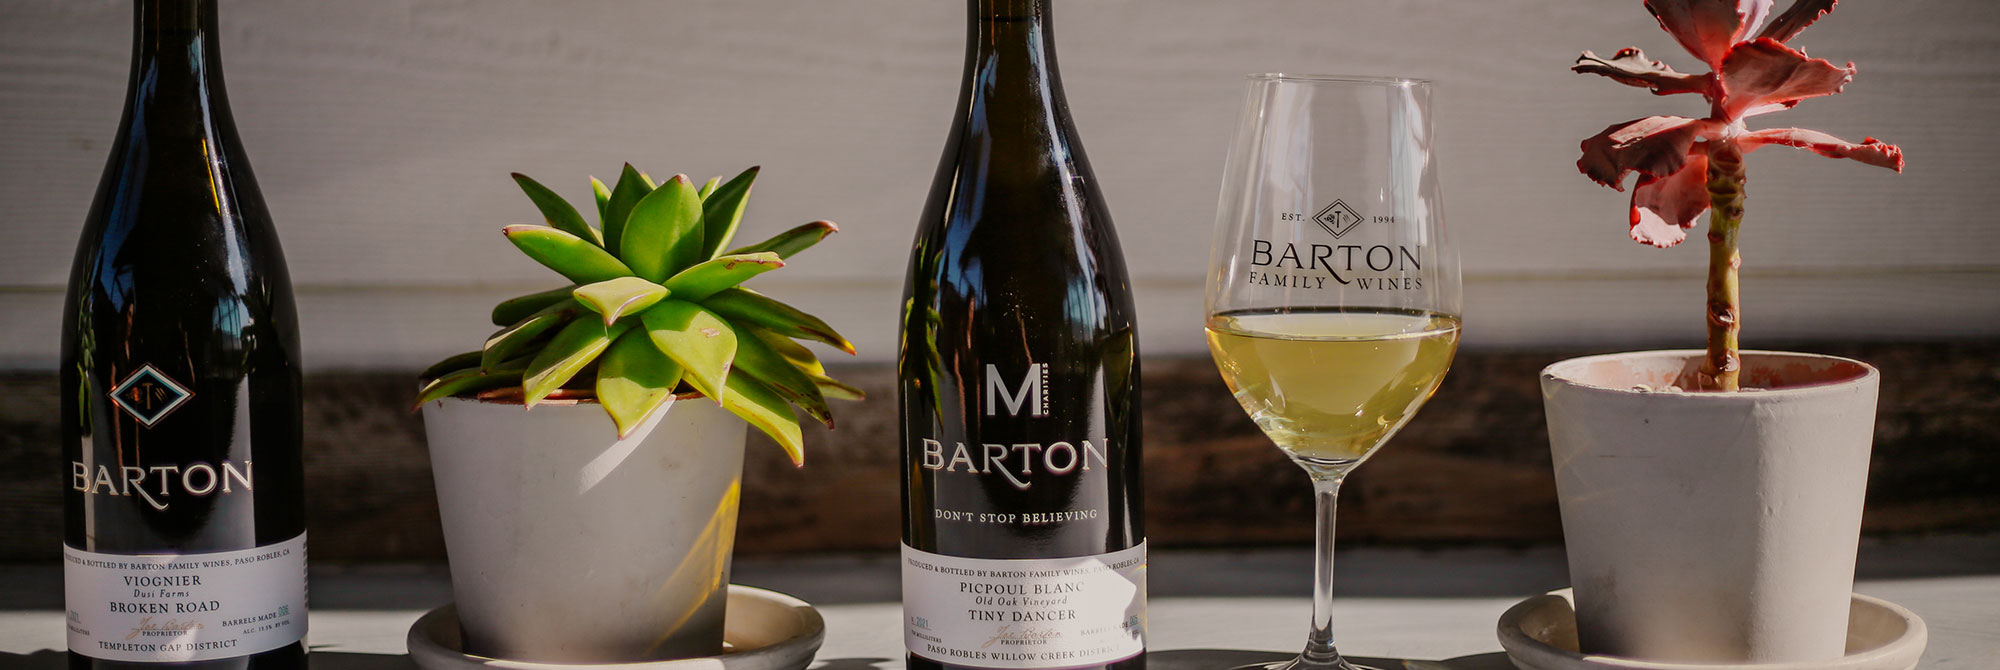 Barton Family Wines Photo